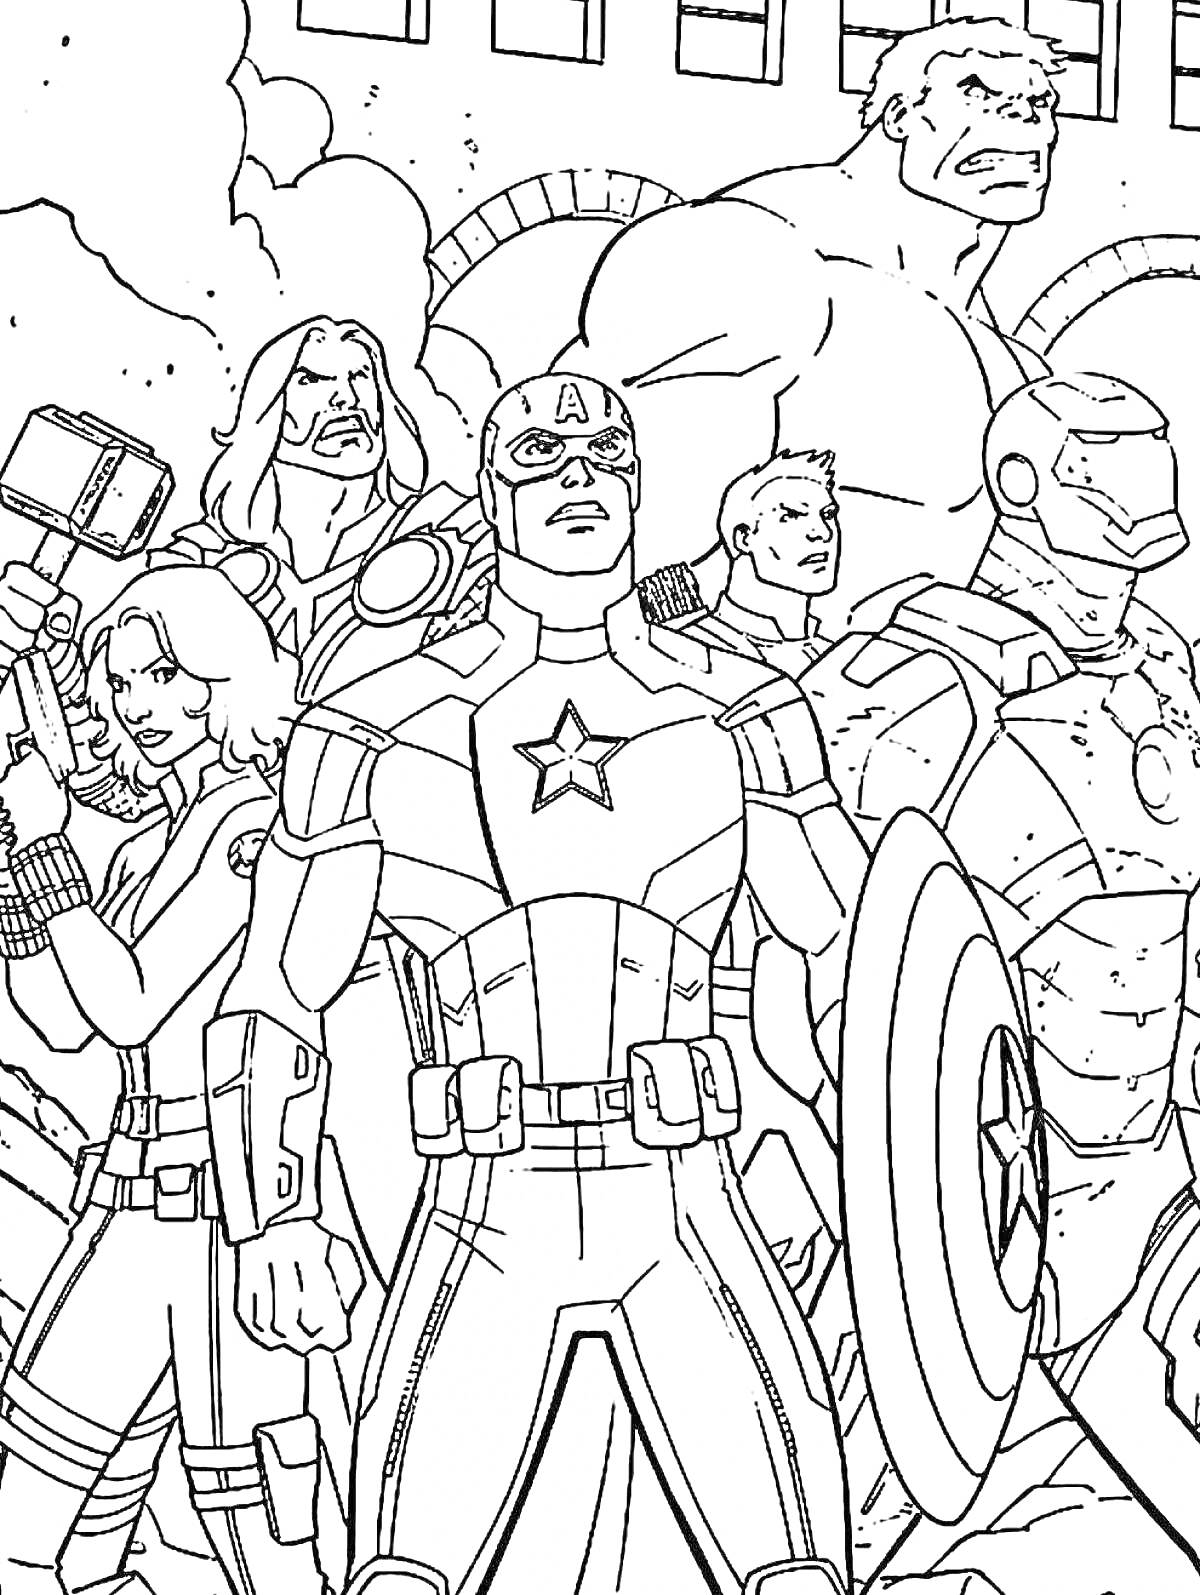 Раскраска Мстители: Общий сбор! Главные персонажи - Капитан Америка, Тор, Железный Человек, Халк, Черная Вдова, Соколиный Глаз